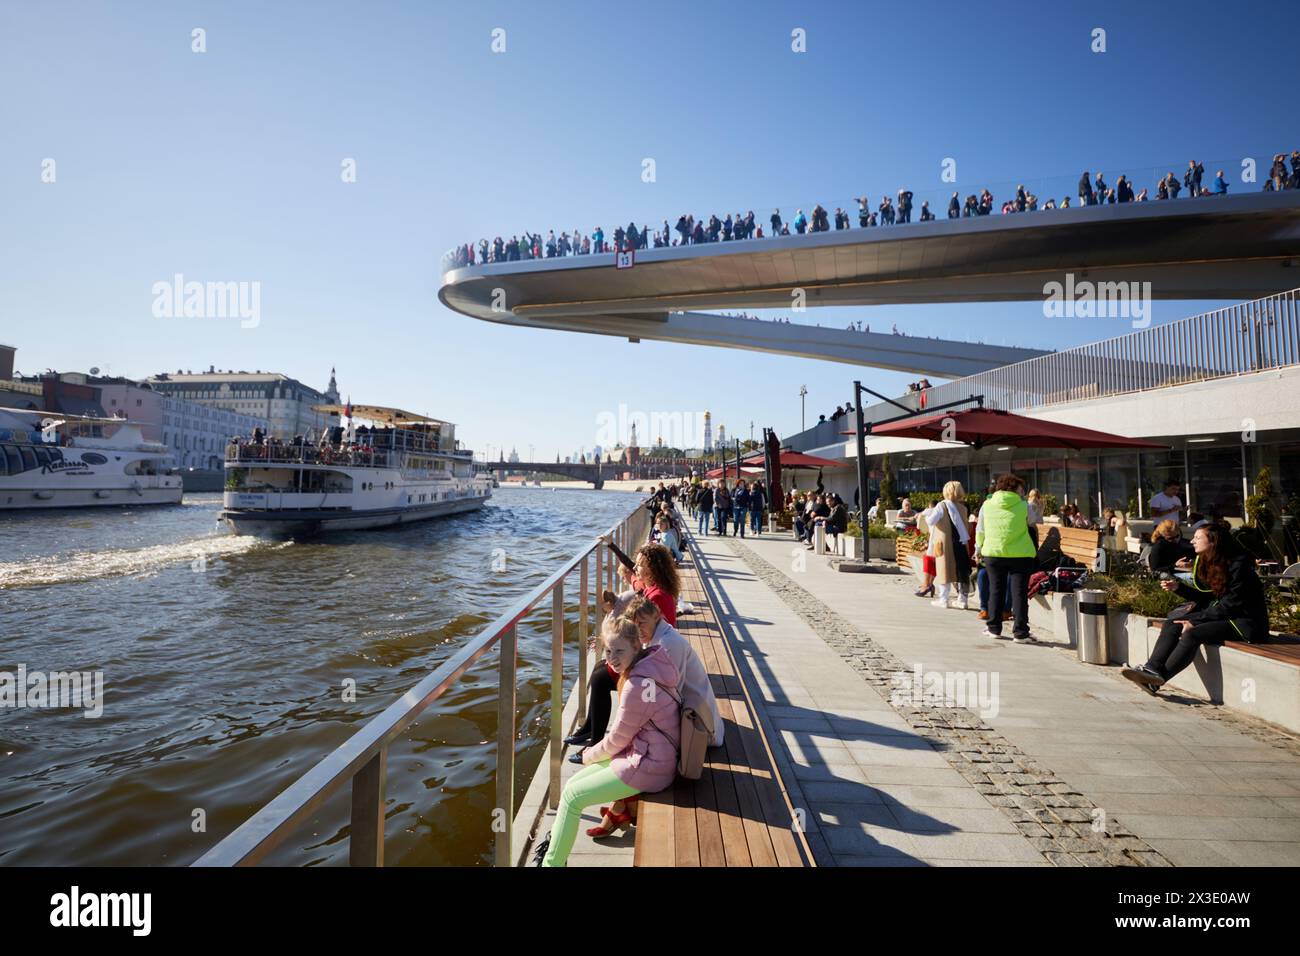 MOSCA, RUSSIA - 24 settembre 2017: Persone sul terrapieno Moskvoretskaya e sul ponte galleggiante sopra il fiume Moskva. Il ponte ha una struttura esterna di 70 metri con connessione wi Foto Stock